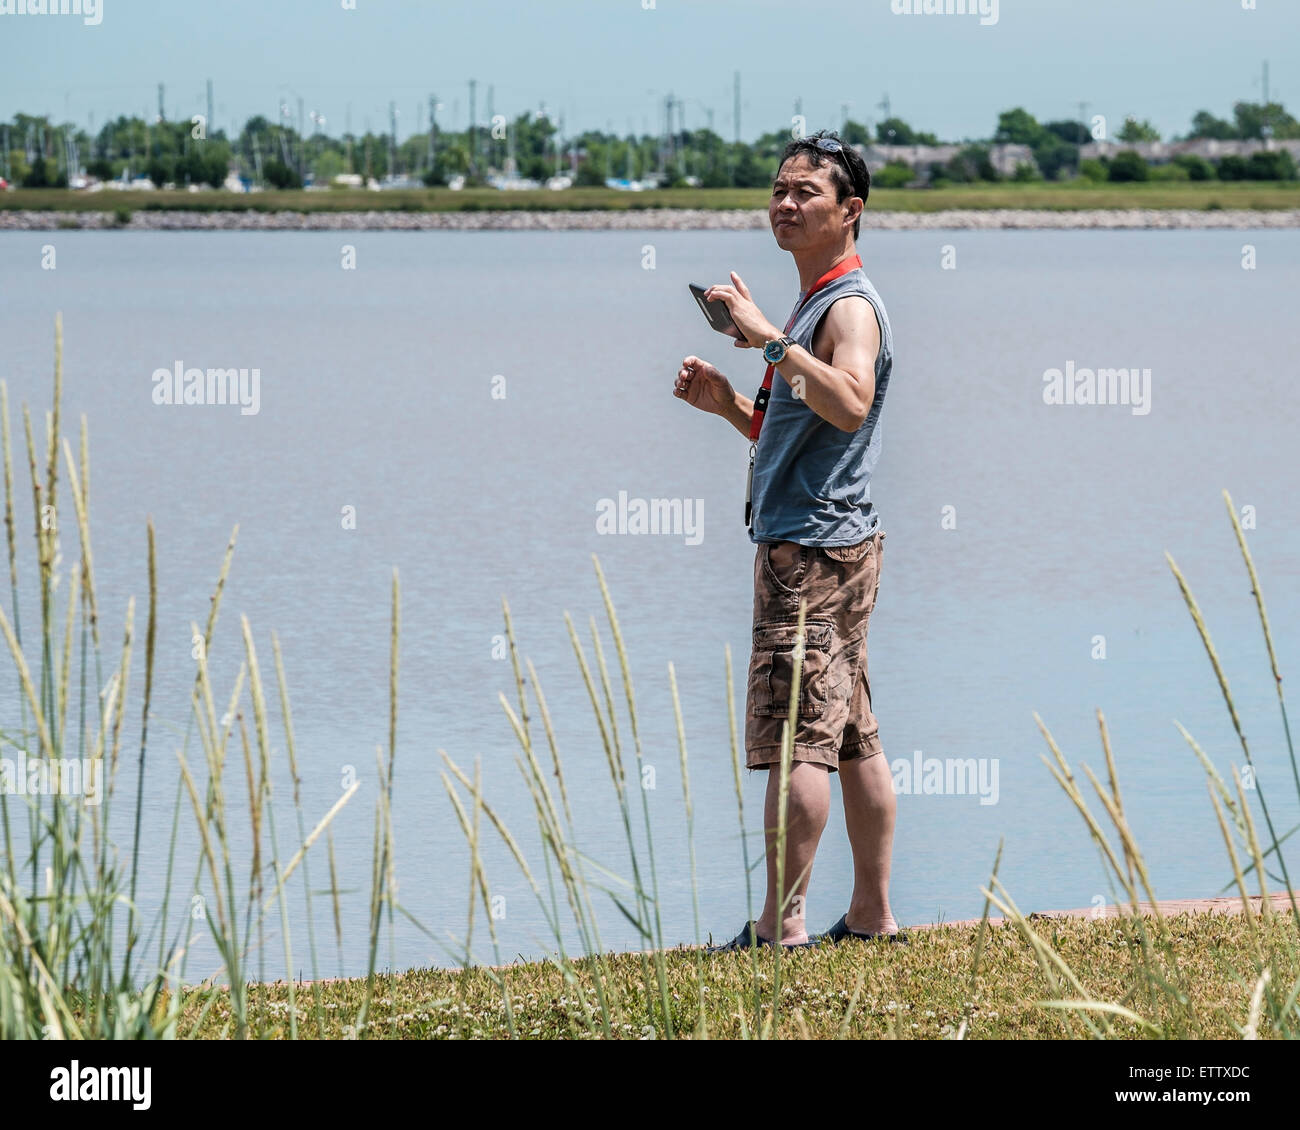 Un homme asiatique âgé de 50 ans prend des photos avec son téléphone mobile au lac Hefner à Oklahoma City, Oklahoma, USA. Banque D'Images